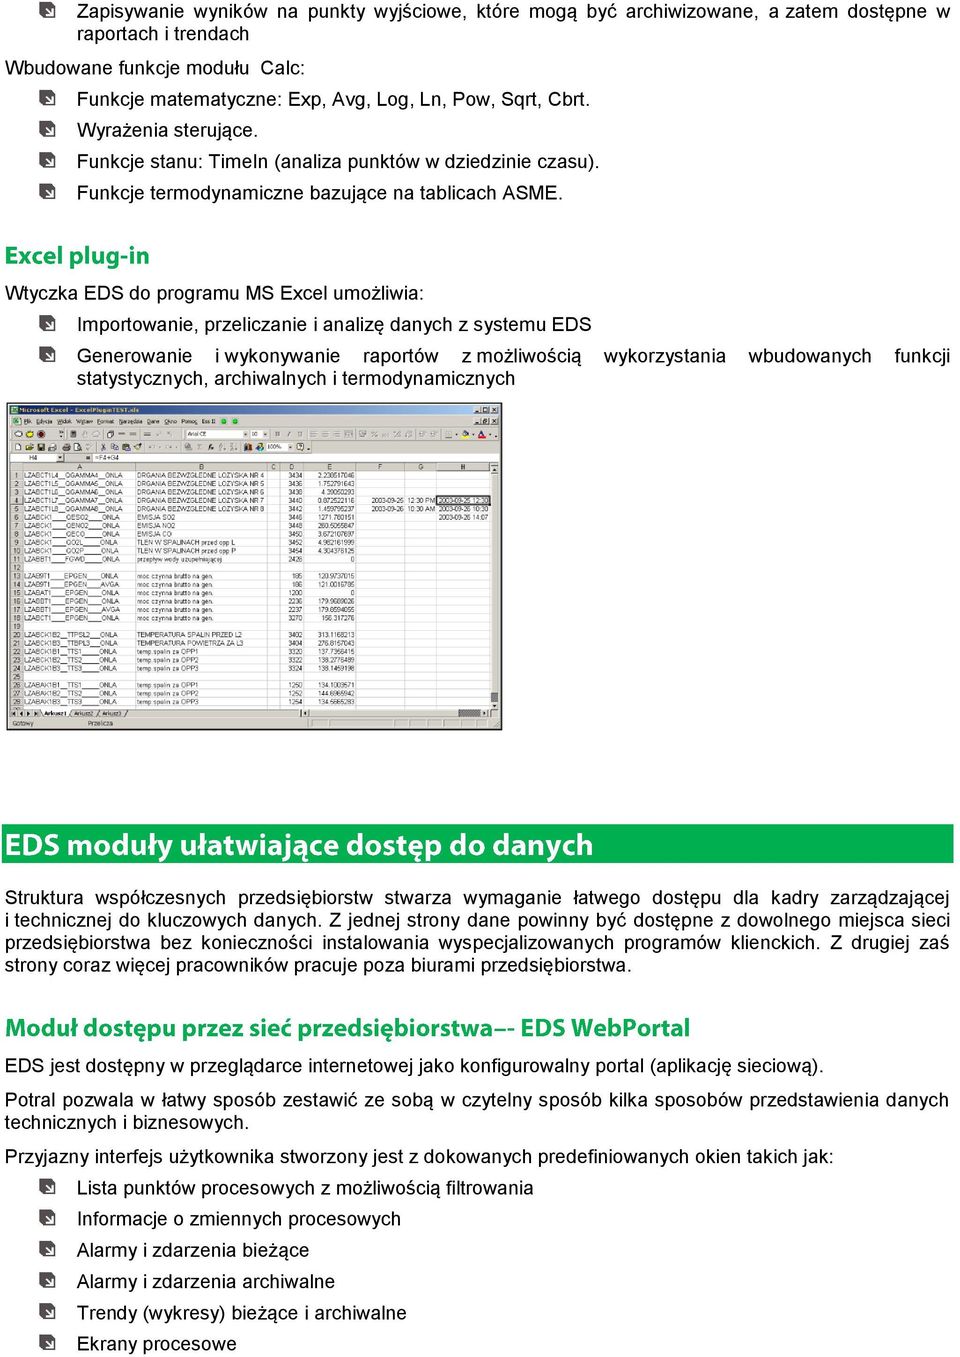 Wtyczka EDS do programu MS Excel umożliwia: Importowanie, przeliczanie i analizę danych z systemu EDS Generowanie i wykonywanie raportów z możliwością wykorzystania wbudowanych funkcji